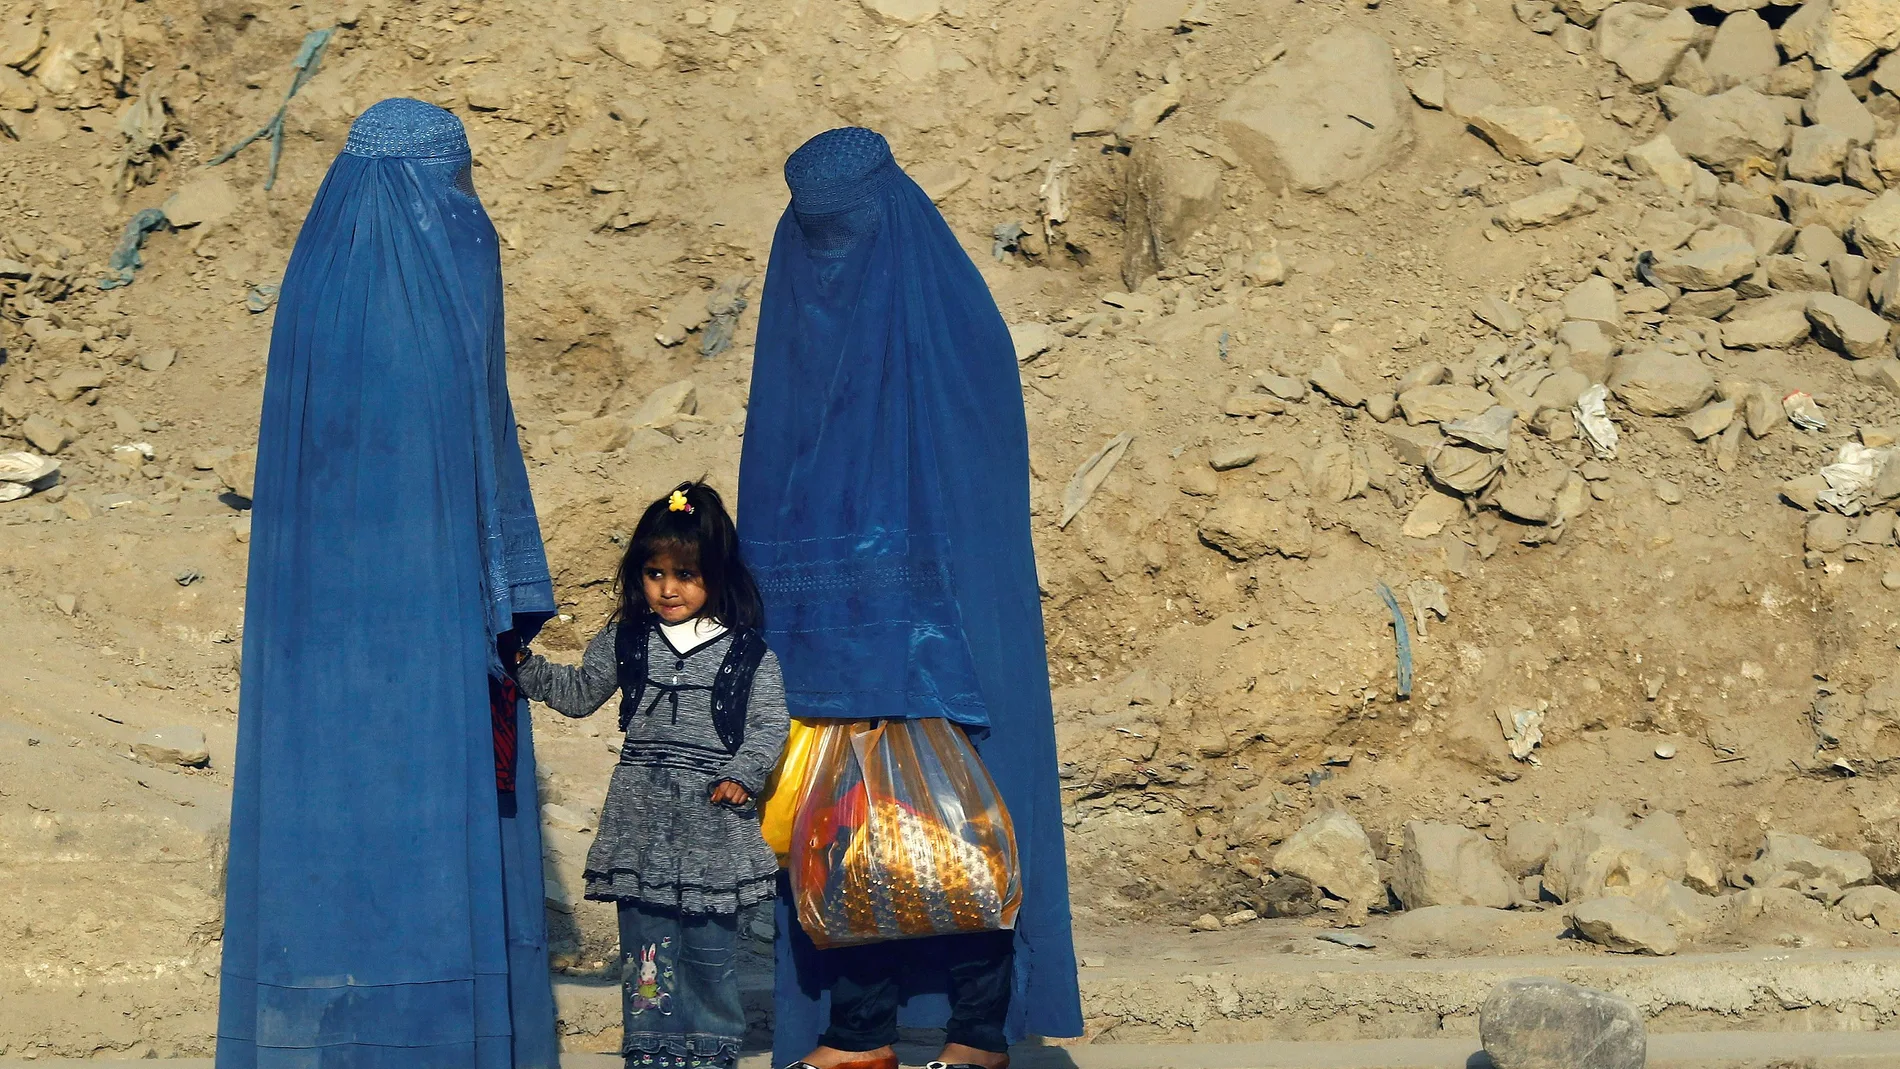  Mujeres afganas vestidas con burkas esperan transporte en una carretera en Kabul